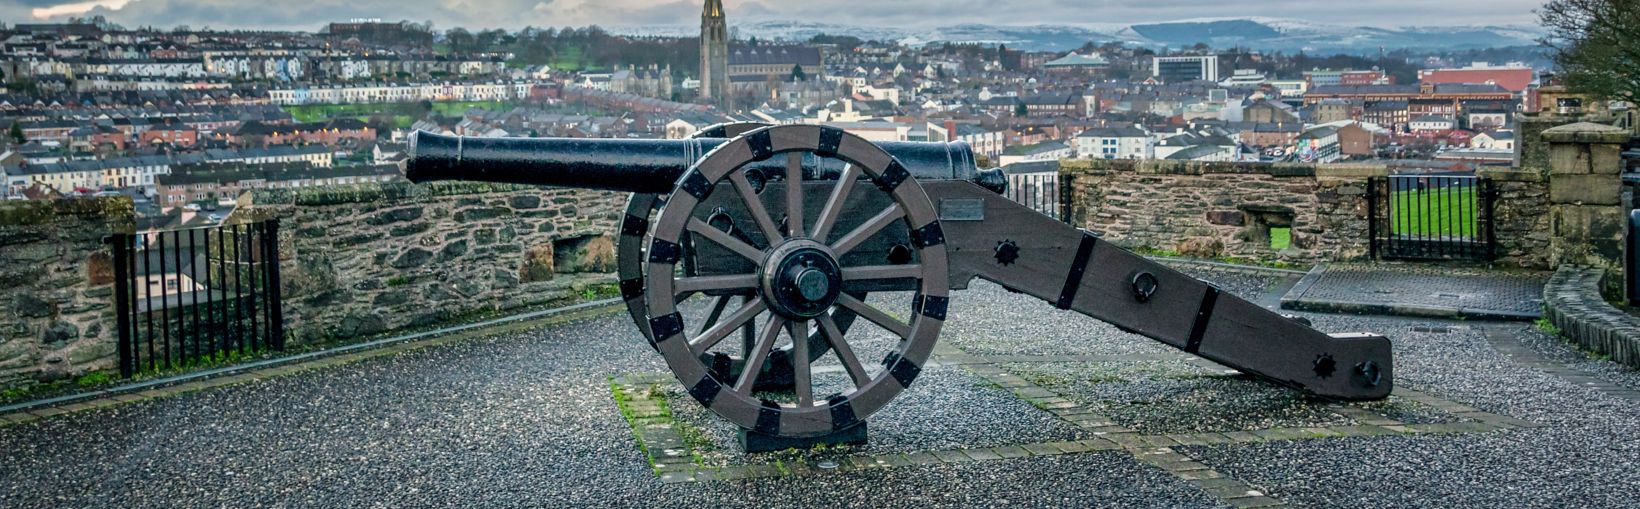 Voici une photo de l’ancien canon à siège sur les murs historiques de Derry en Irlande du Nord